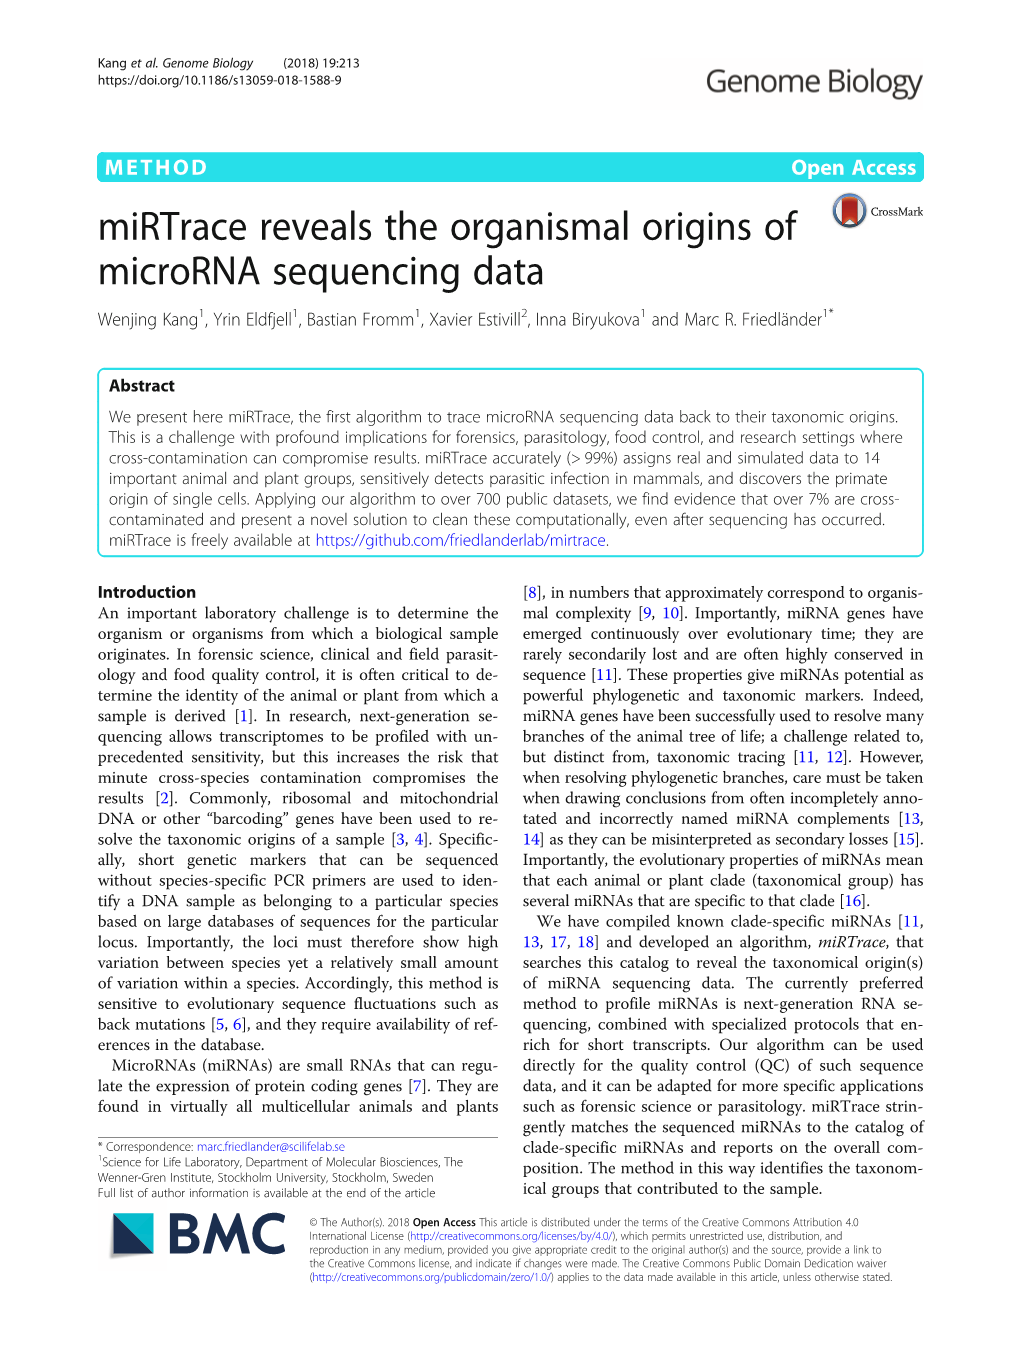 Mirtrace Reveals the Organismal Origins of Microrna Sequencing Data Wenjing Kang1, Yrin Eldfjell1, Bastian Fromm1, Xavier Estivill2, Inna Biryukova1 and Marc R